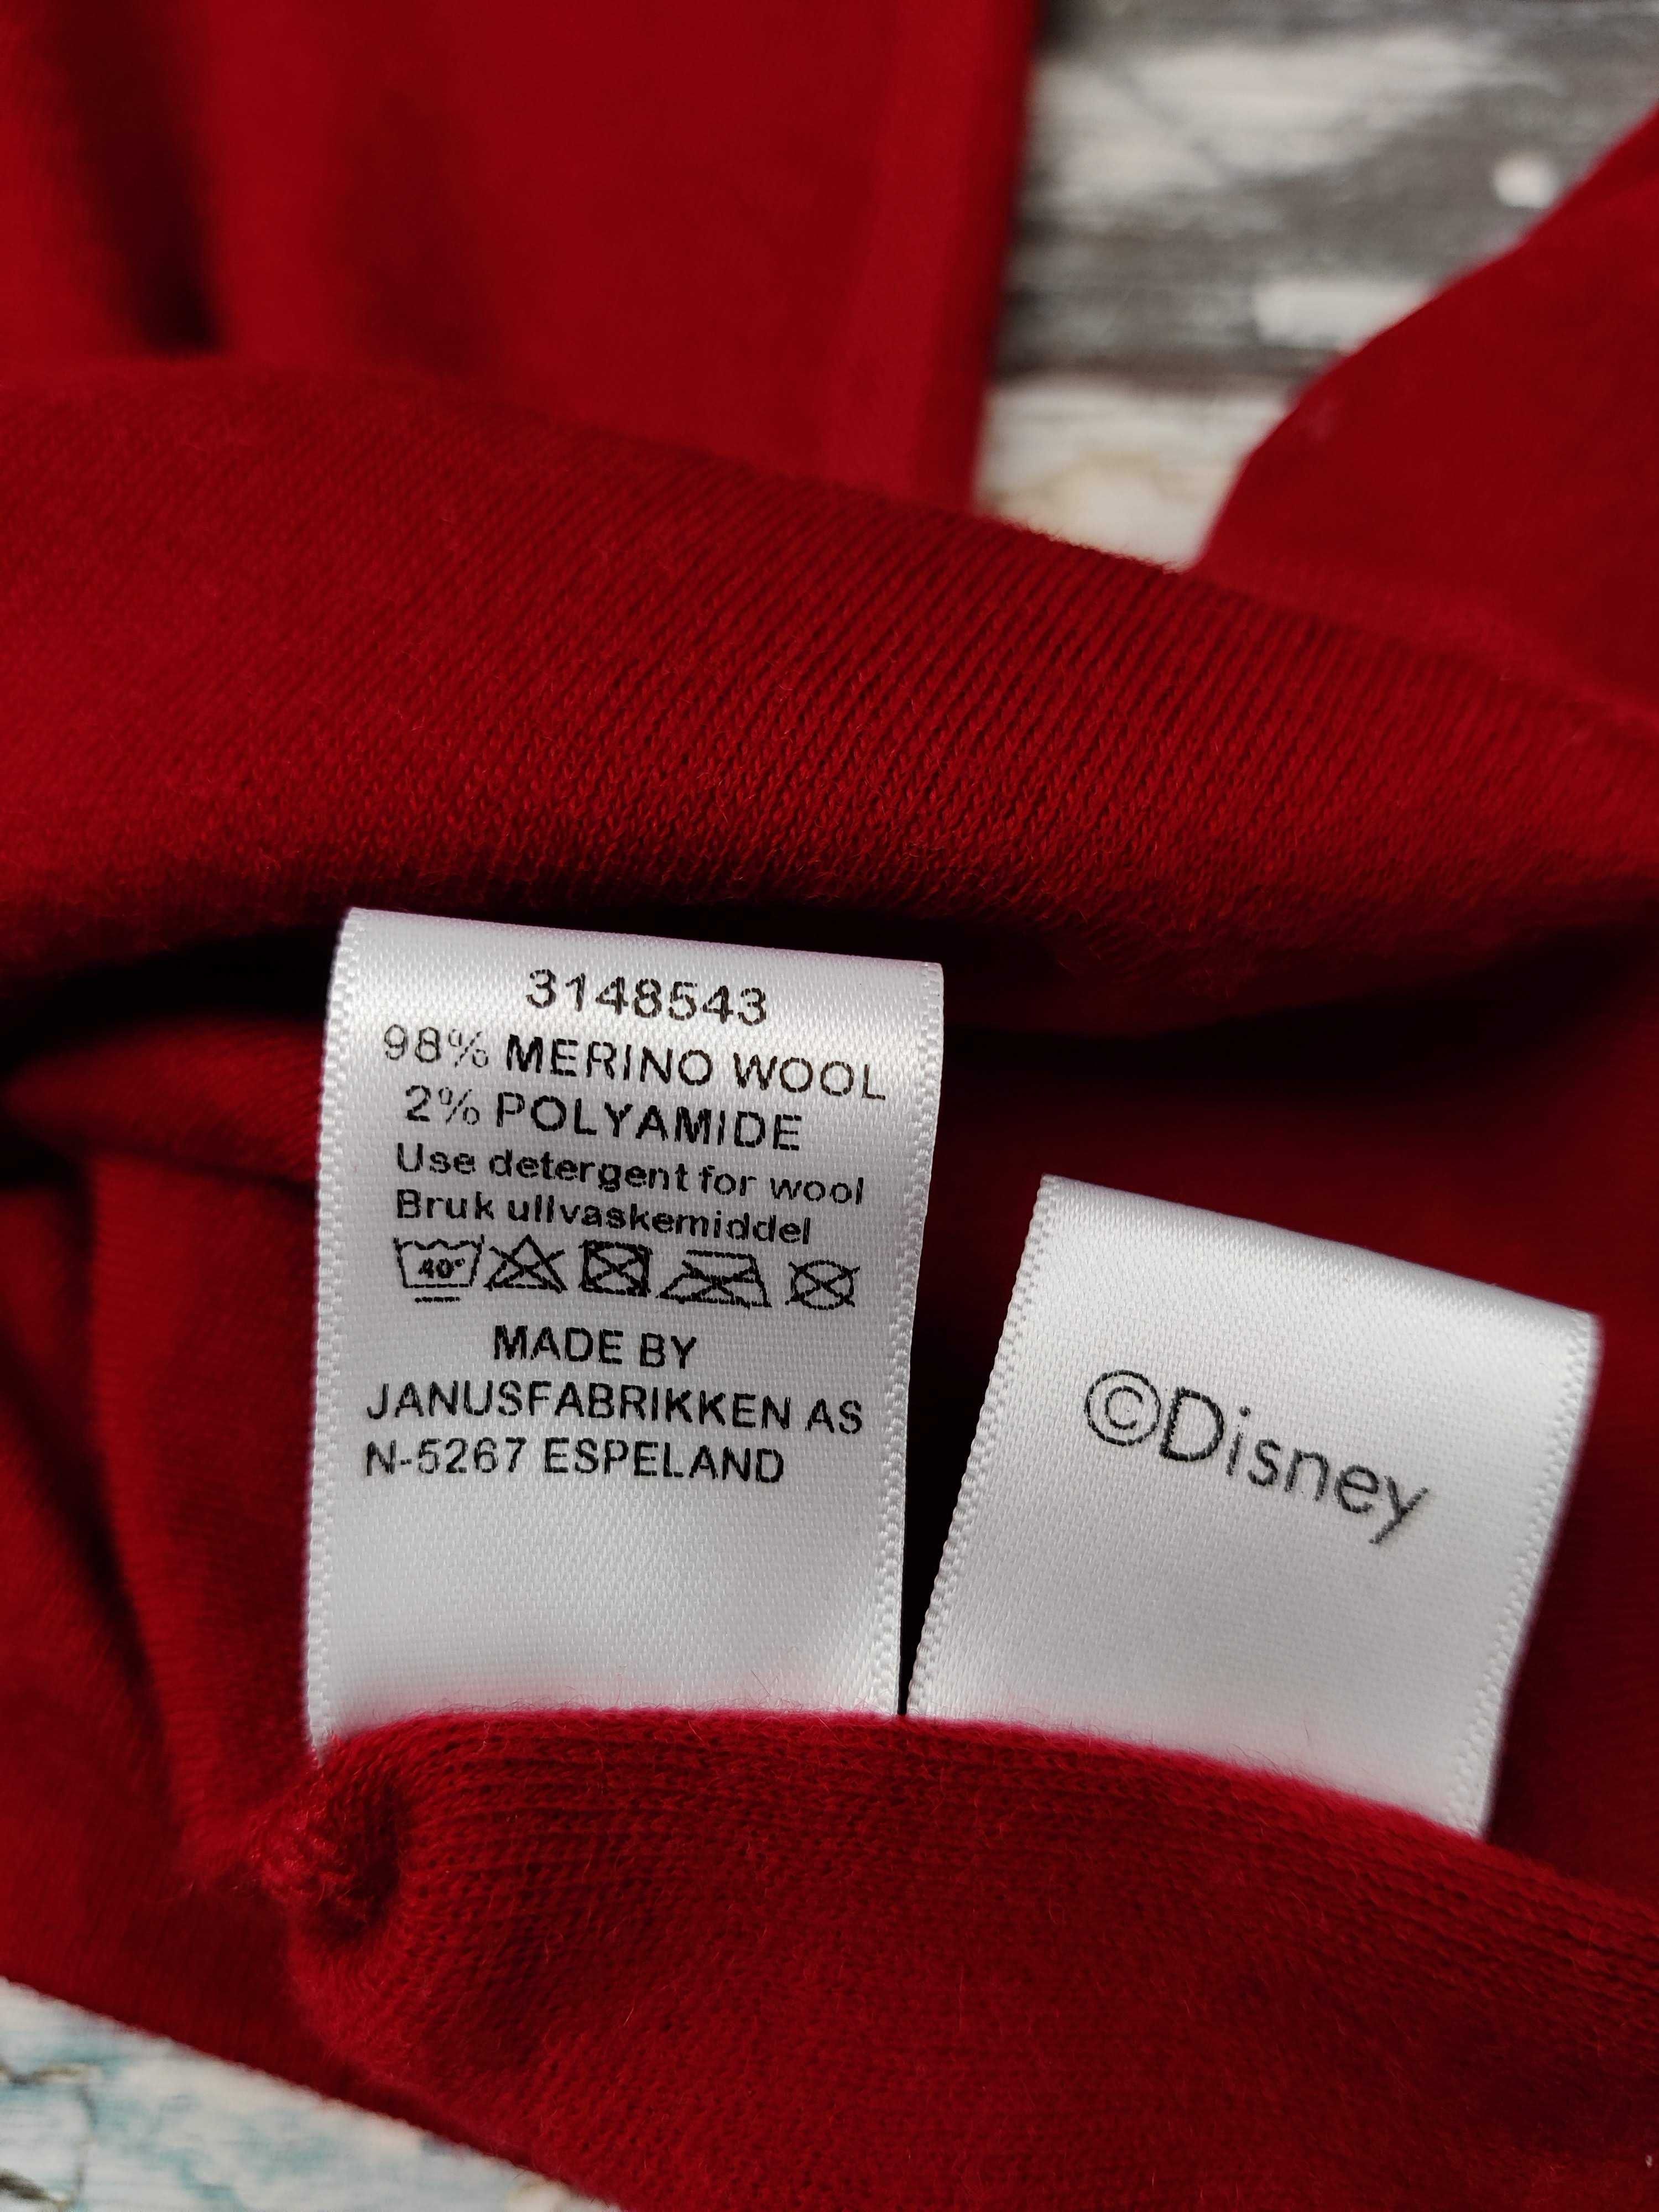 Janus i Disney czerwona bluzka 100% merino wzór mickie mouse lady XL